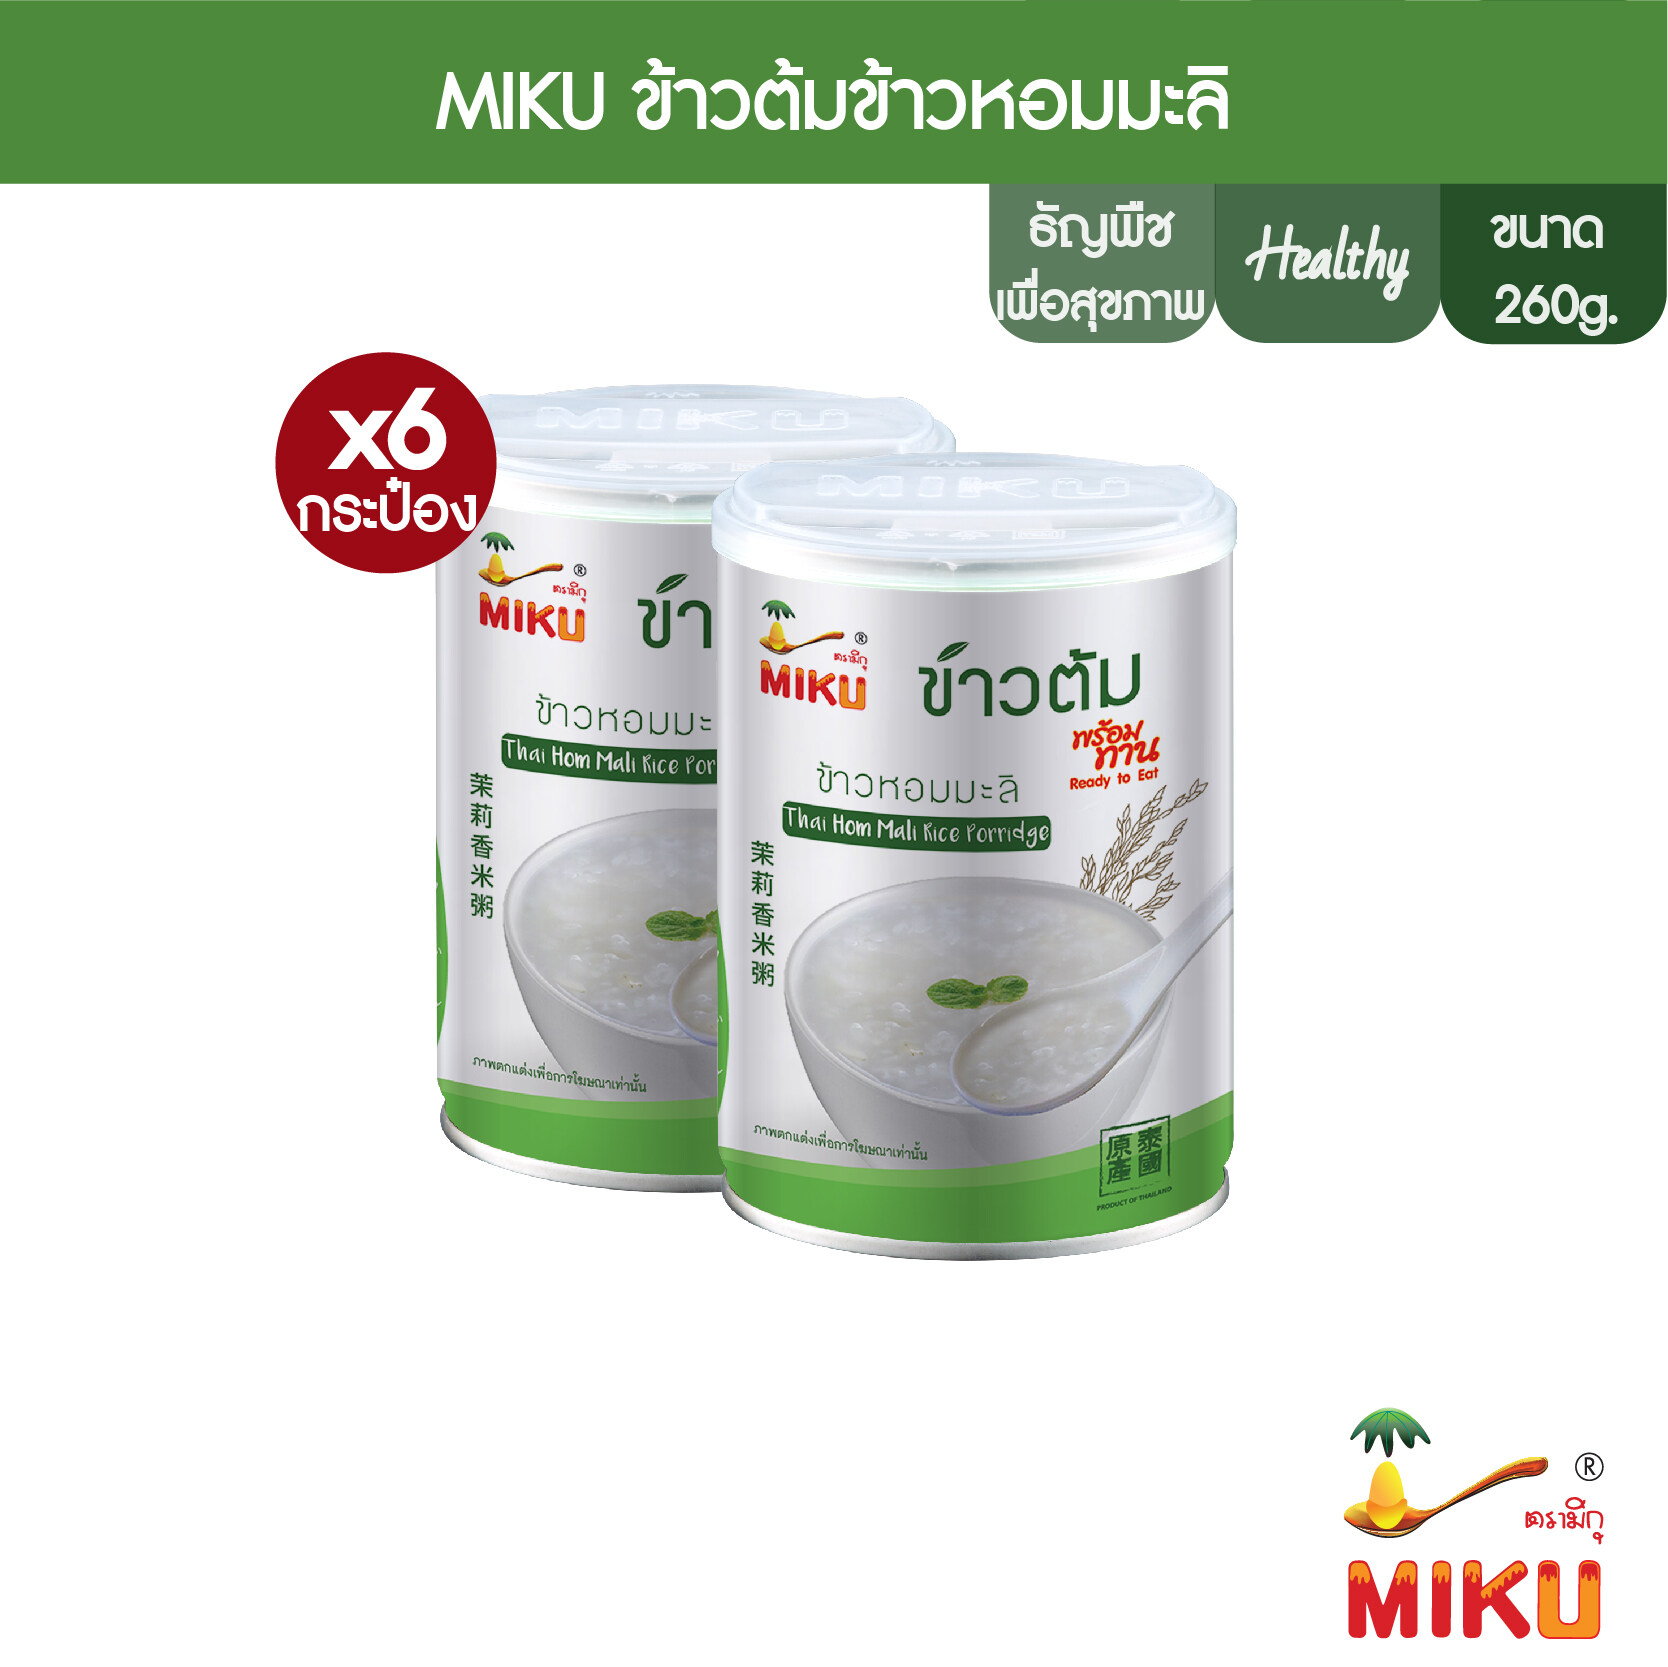 [พร้อมทาน] MIKU ข้าวต้มข้าวหอมมะลิ ขนาด 260 กรัม x6 [Ready to eat] Thai Hom Mali rice soup Healthy Foo Vegan